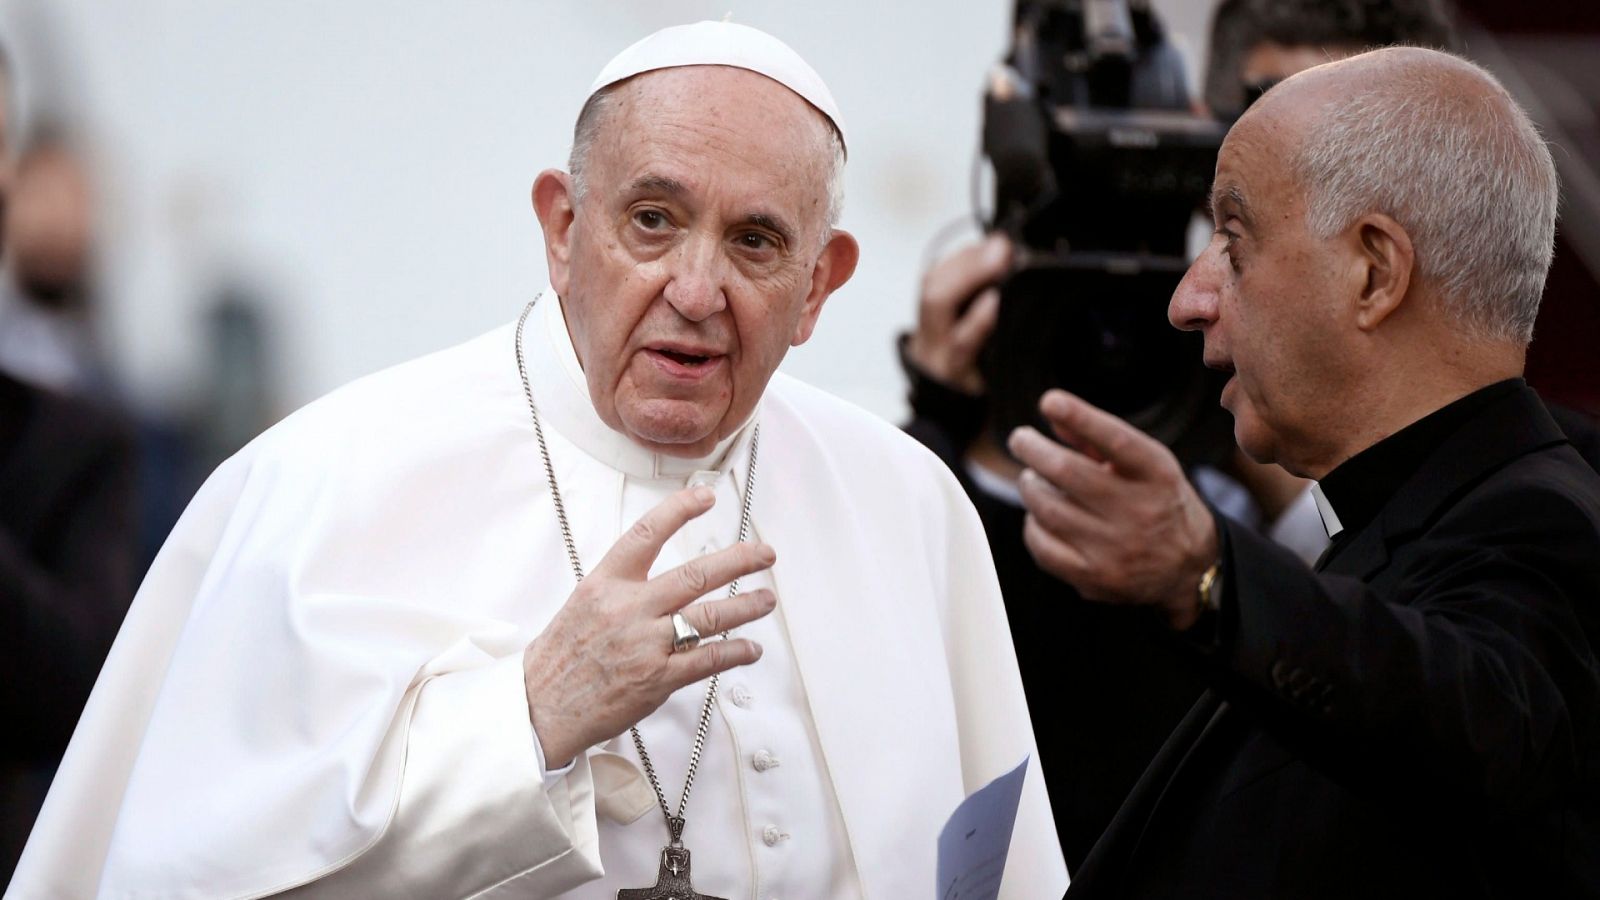 El Papa Francisco ha aprobado un endurecimiento de las penas en caso de pederastia